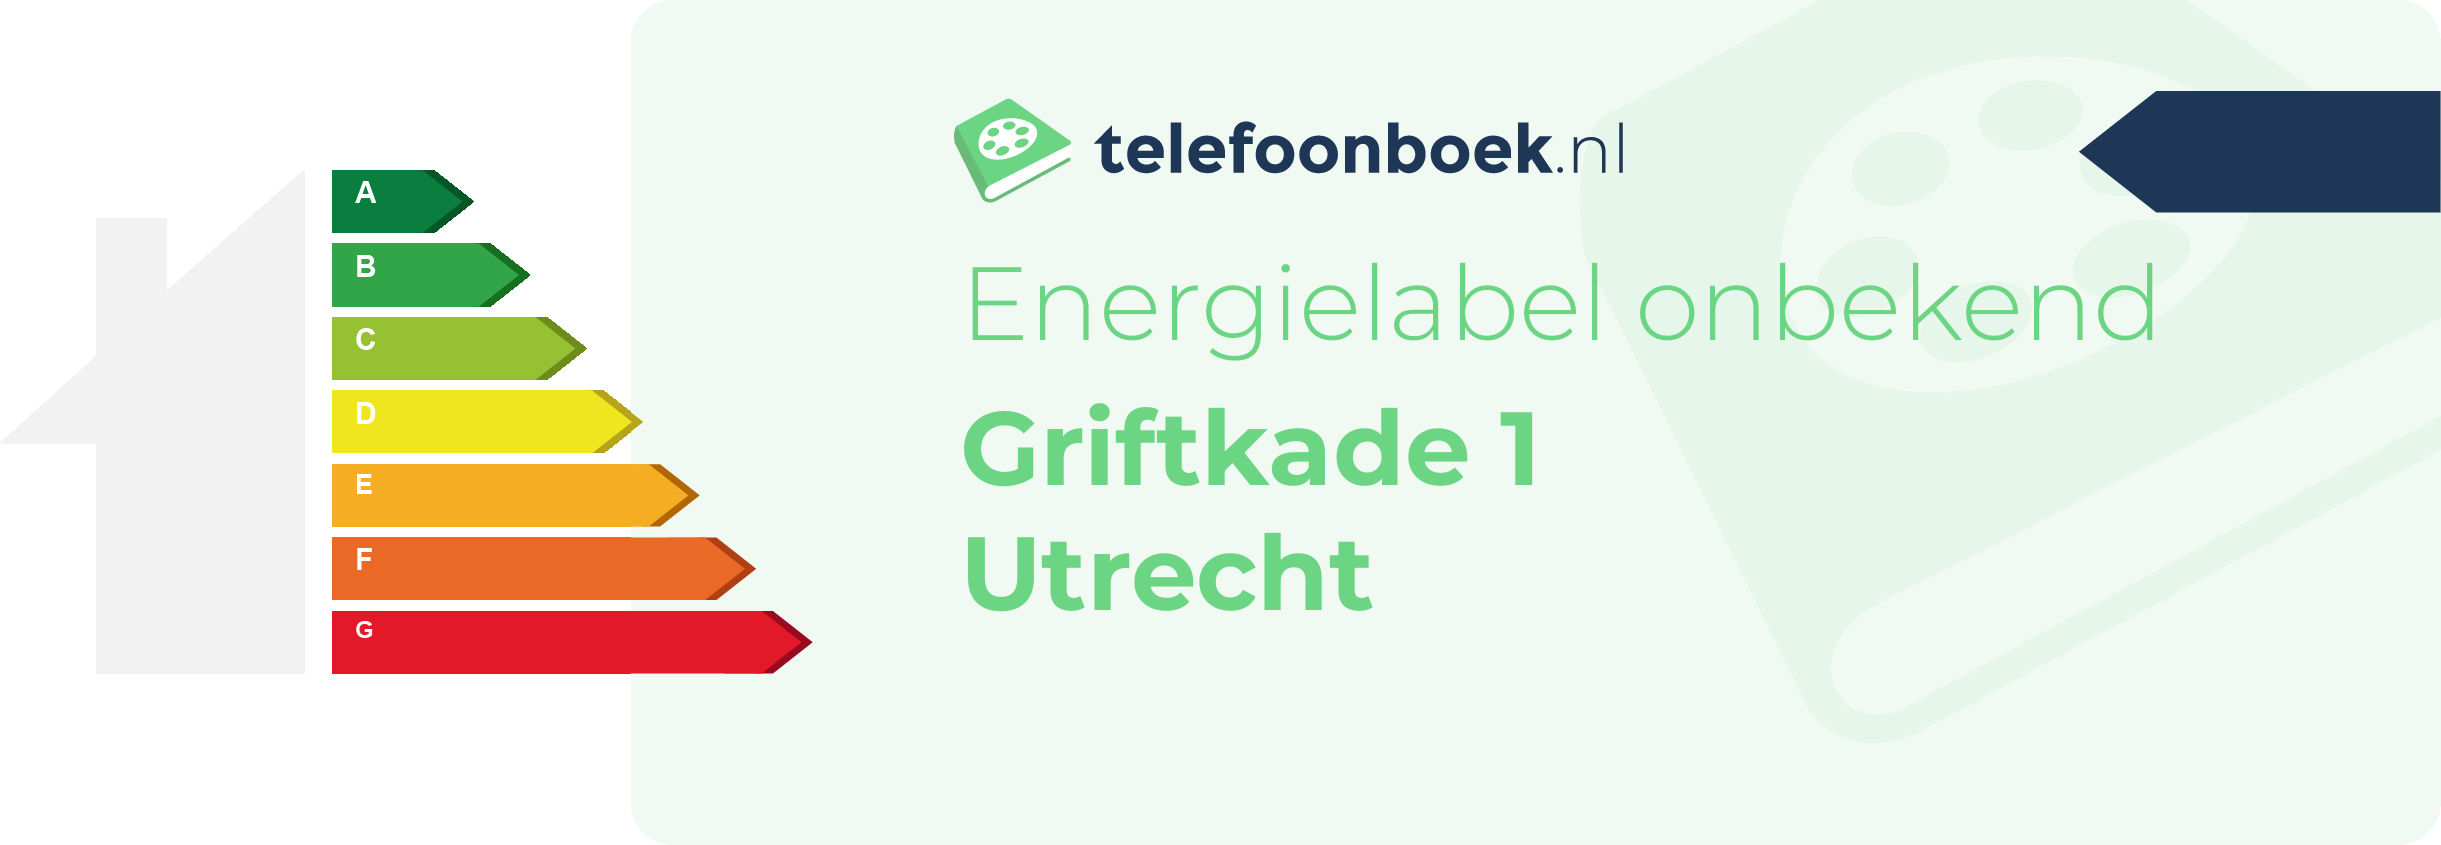 Energielabel Griftkade 1 Utrecht